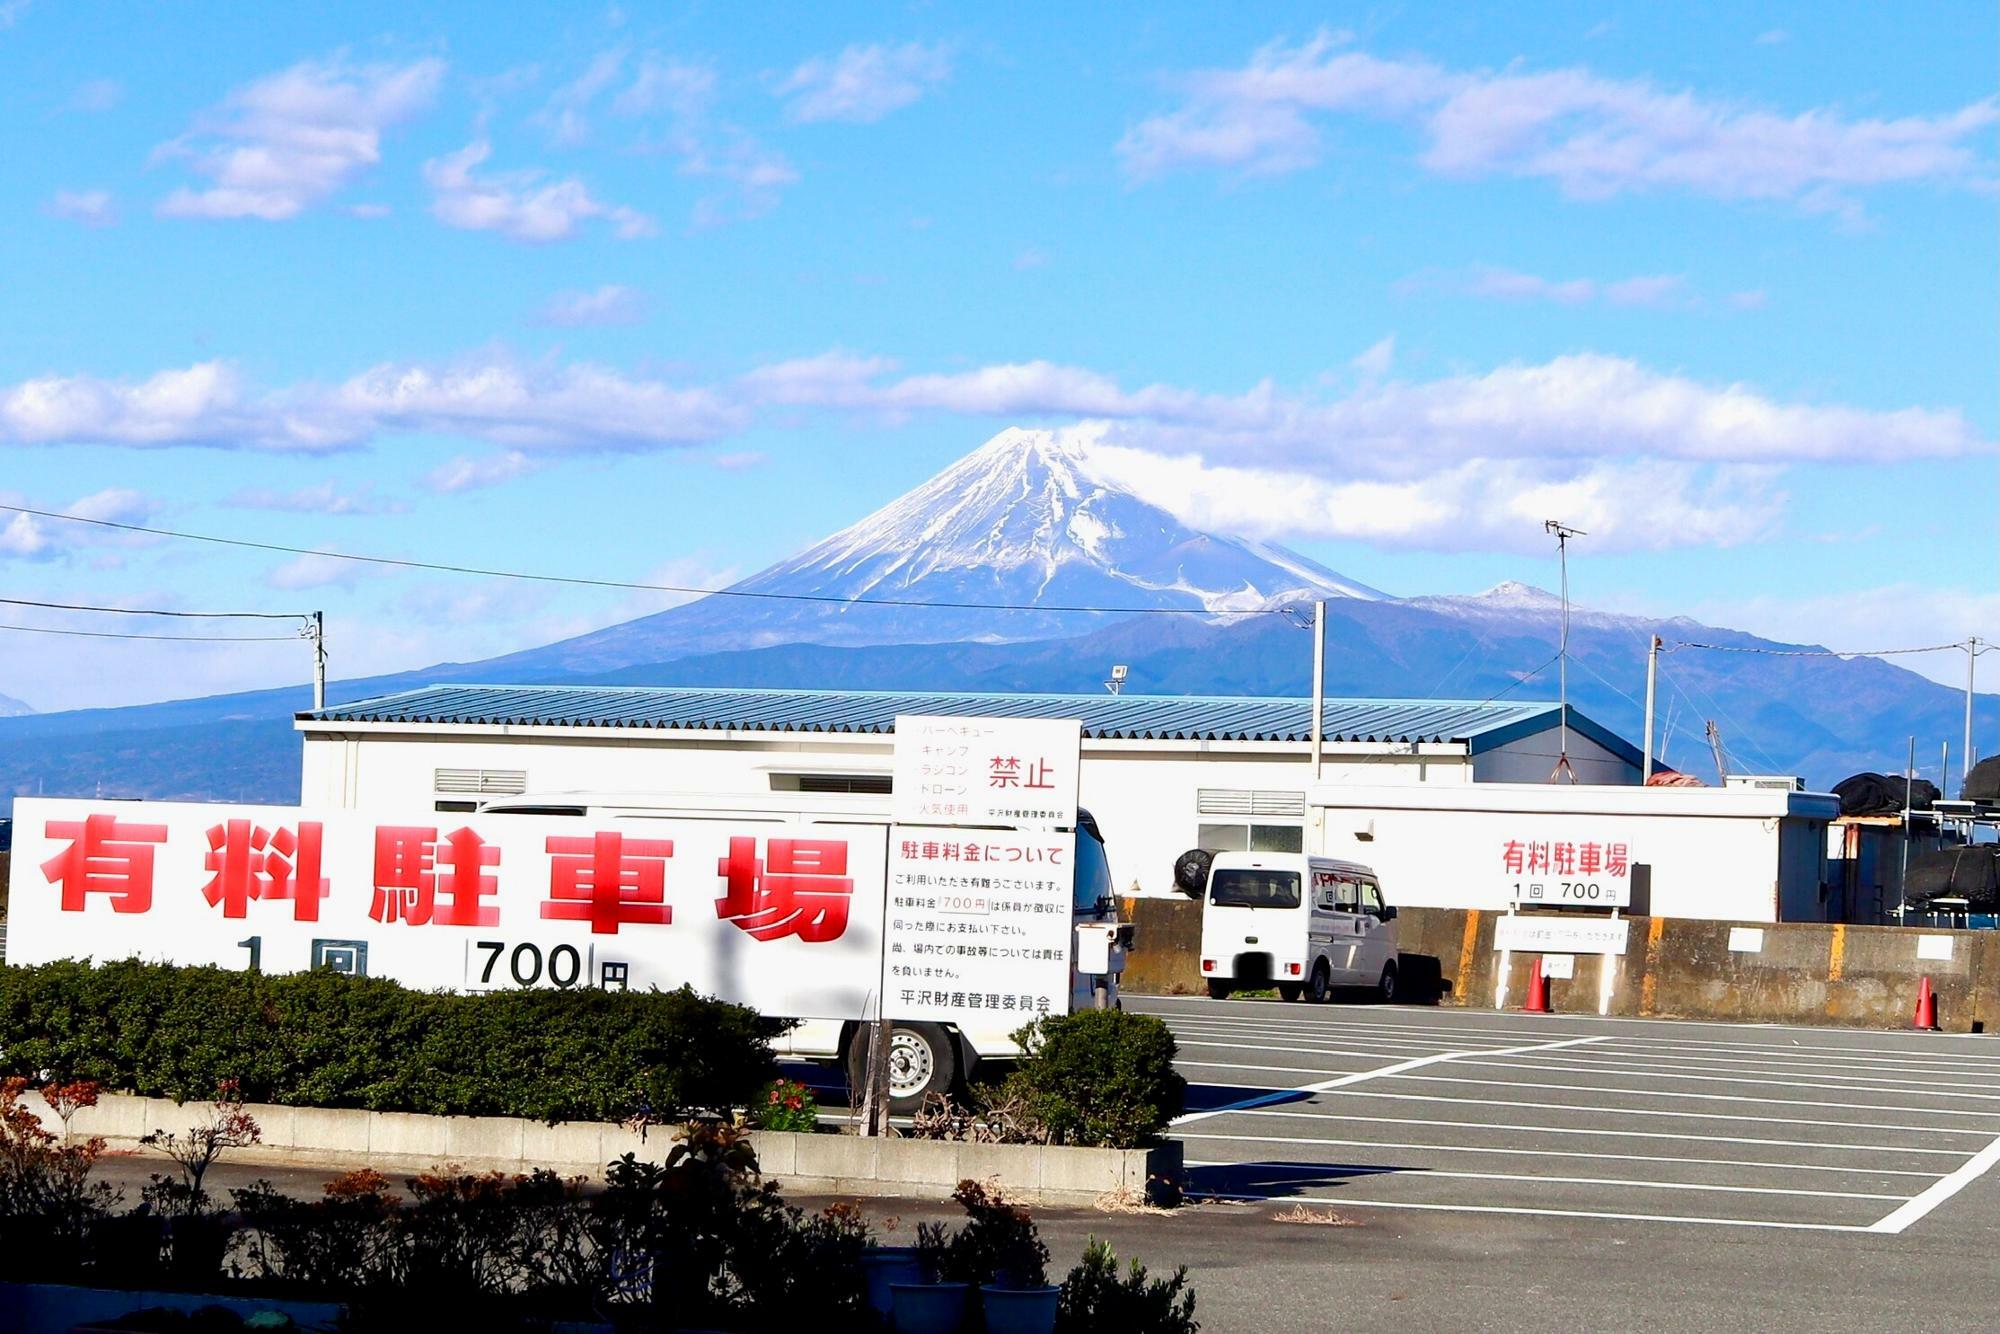 駿河湾越しの富士山もよく見えました